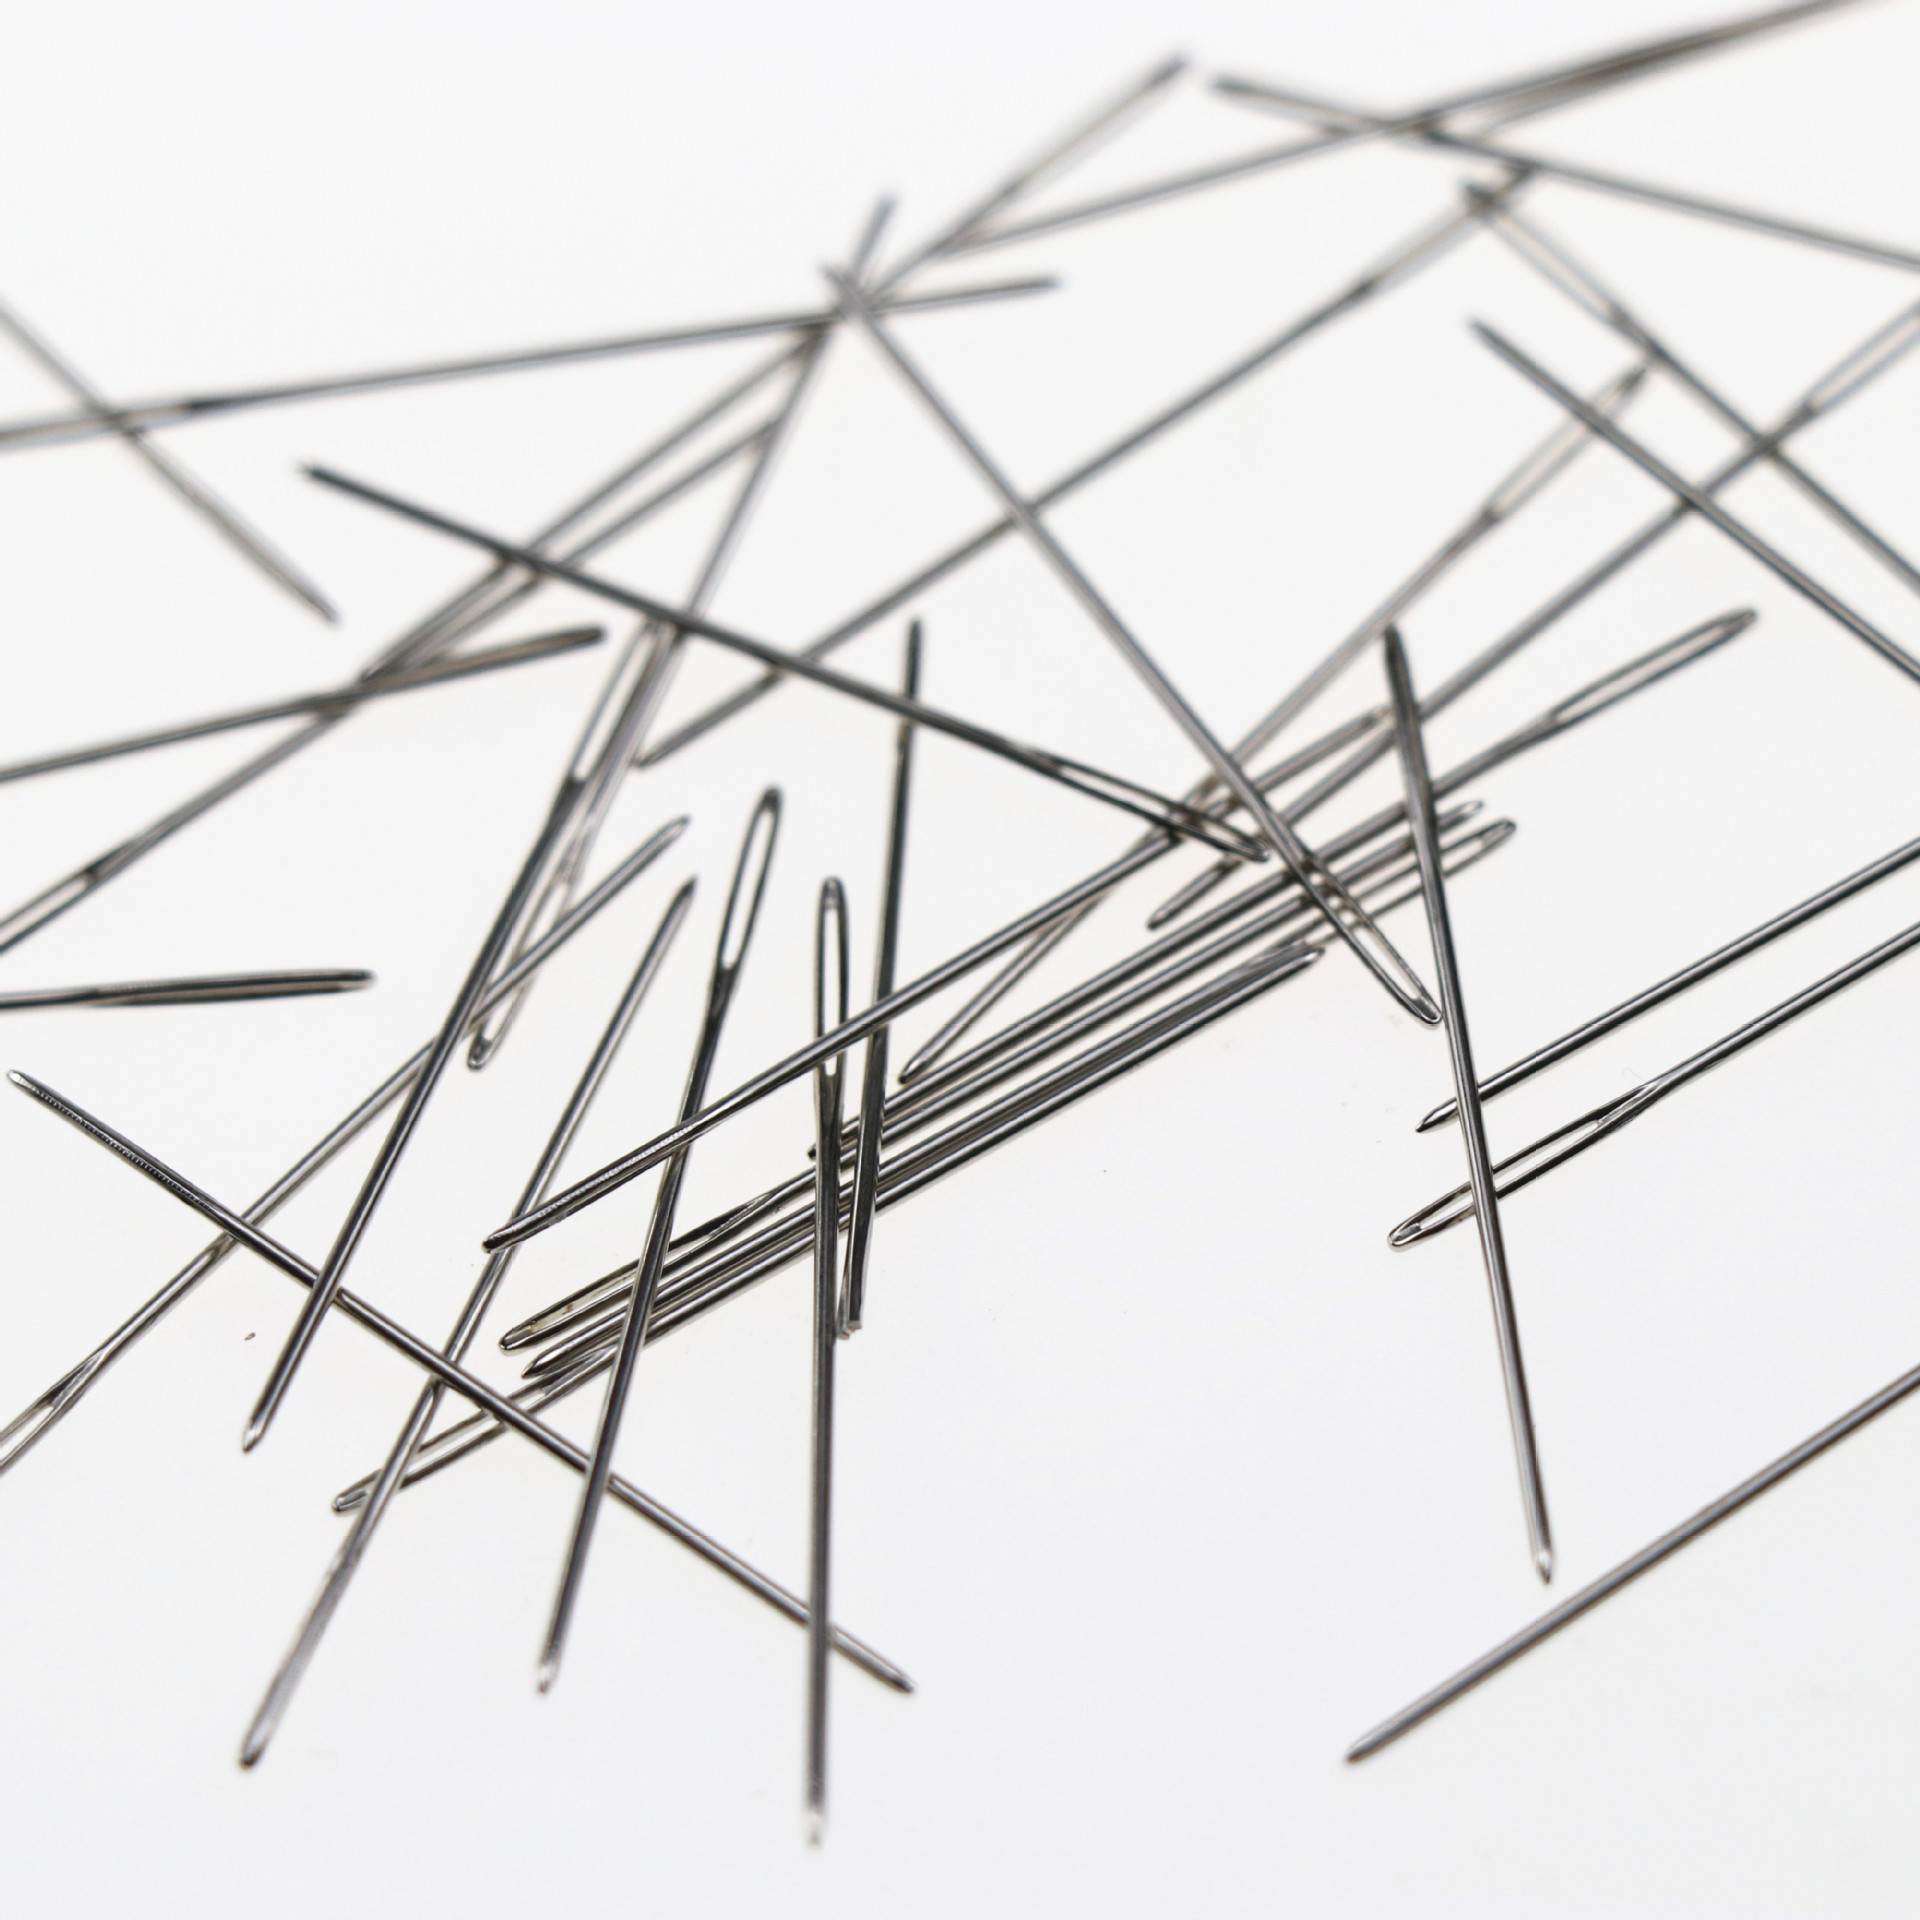 藏针缝-缝纫针法基础图文教程- 虎课网